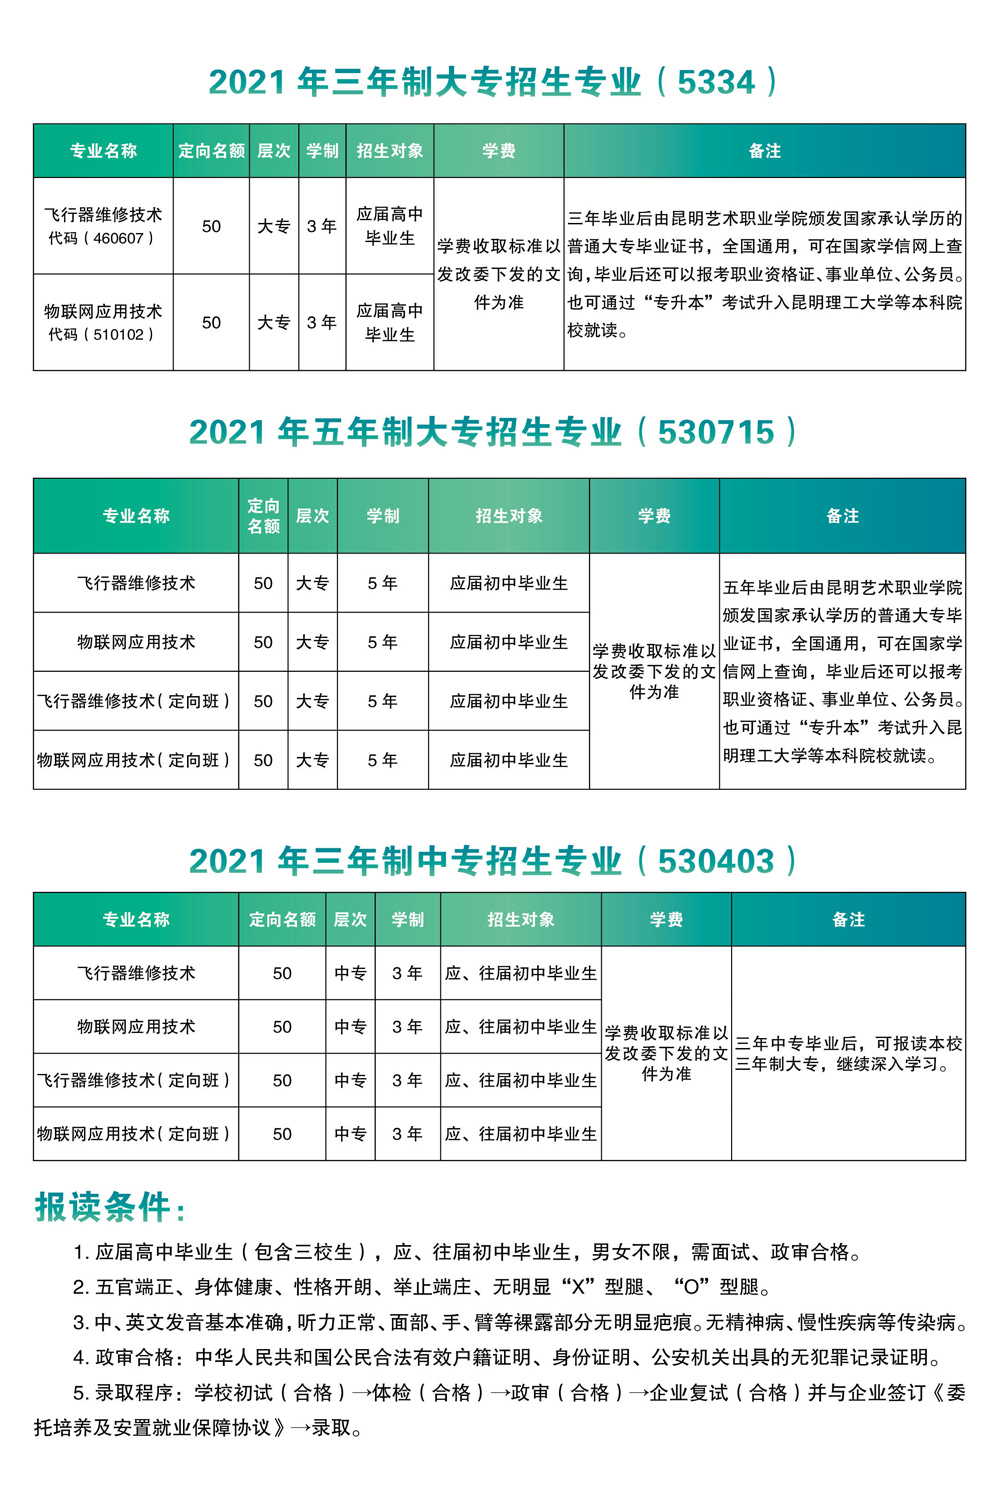 云南飞行器维修技术专业2021招生简章